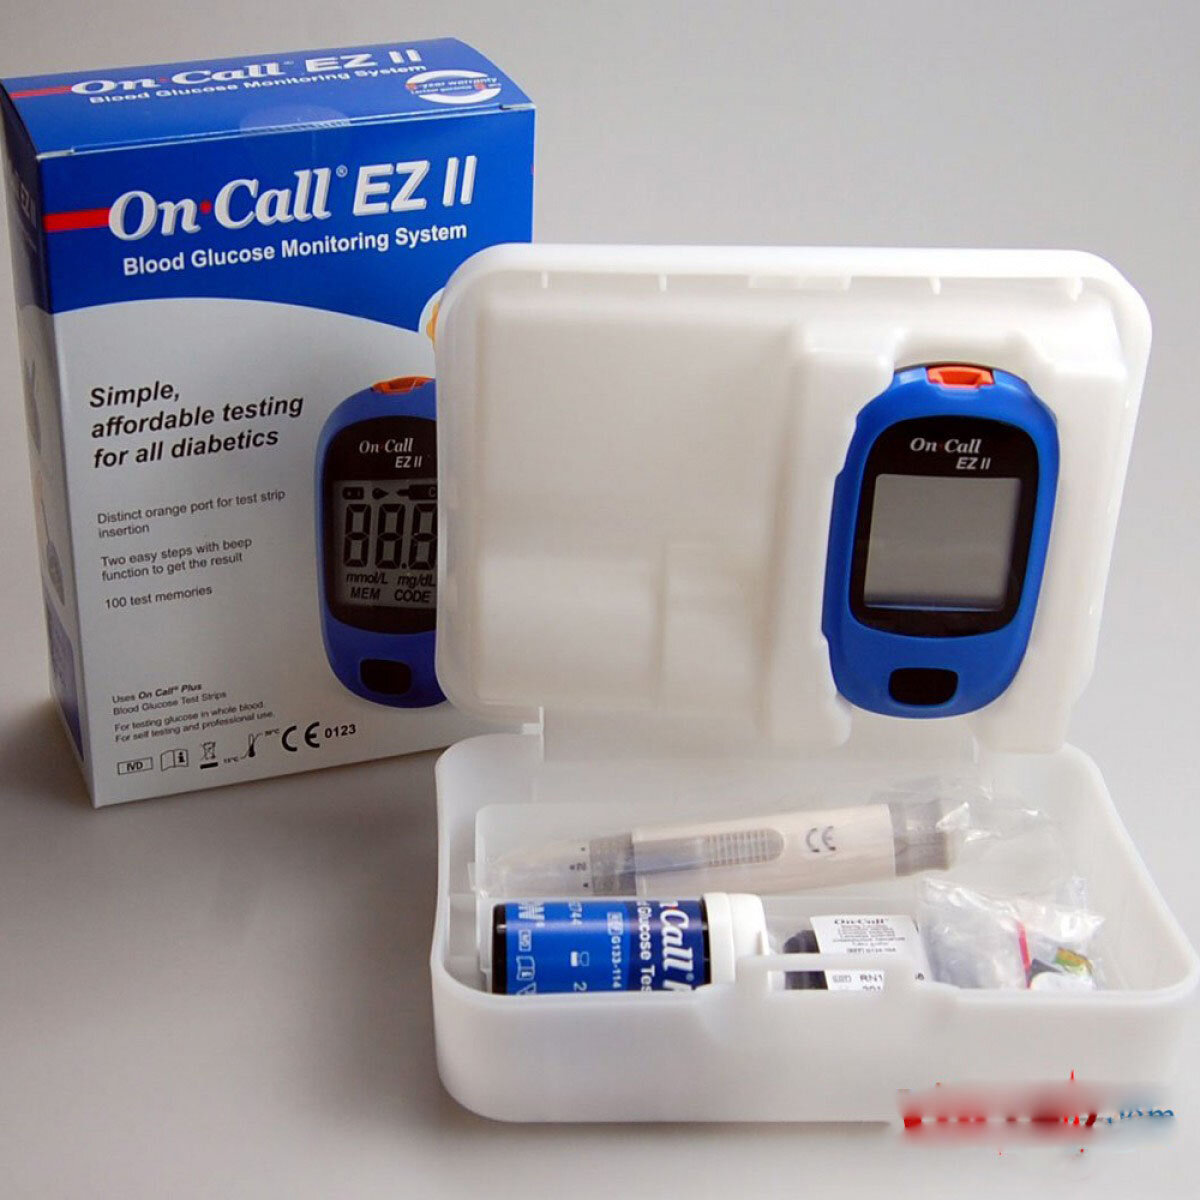 máy đo đường huyết On Call EZ II giá rẻ